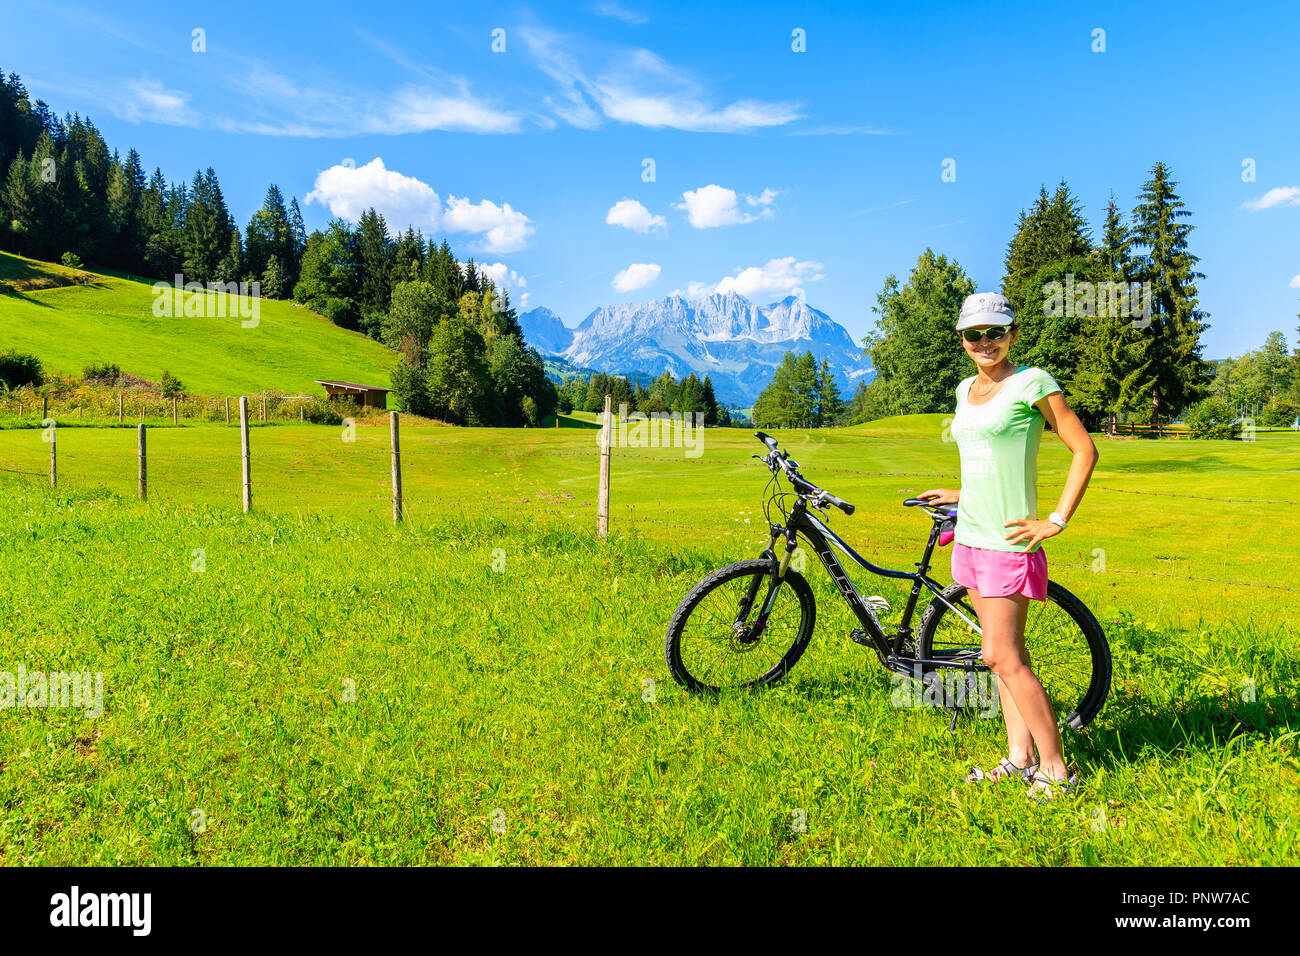 KITZBUHEL, Austria - 30 LUG 2018: giovane donna ciclista che posano per una foto in bella estate paesaggio delle Alpi, Austria. Foto Stock